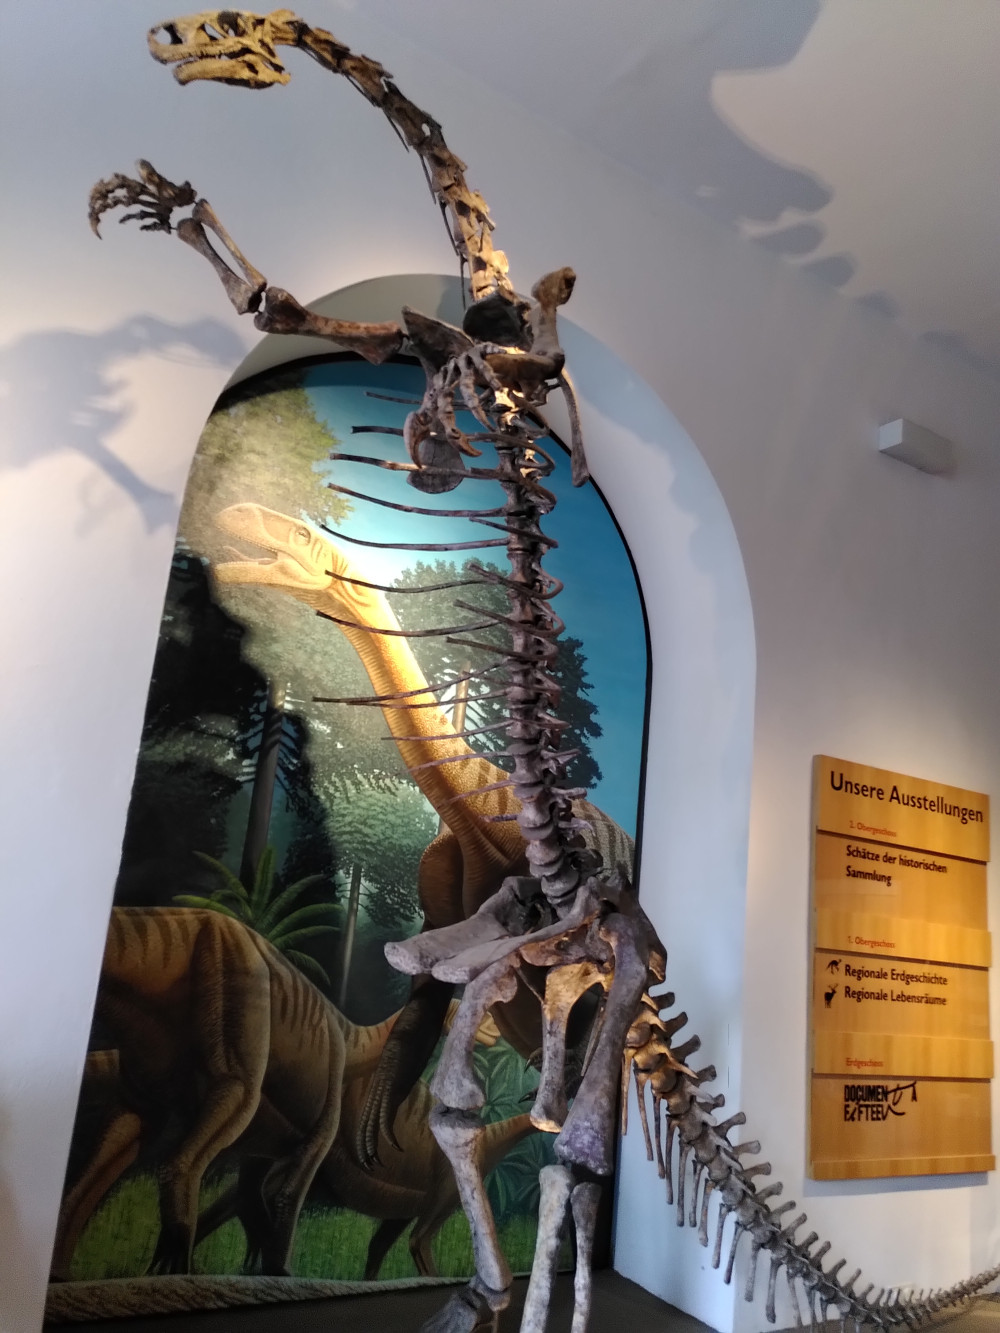 Farbfoto eines aufrecht auf zwei Beinen stehenden Dinosaurier-Skeletts vor einem Wandbild mit gemalten Sauriern.